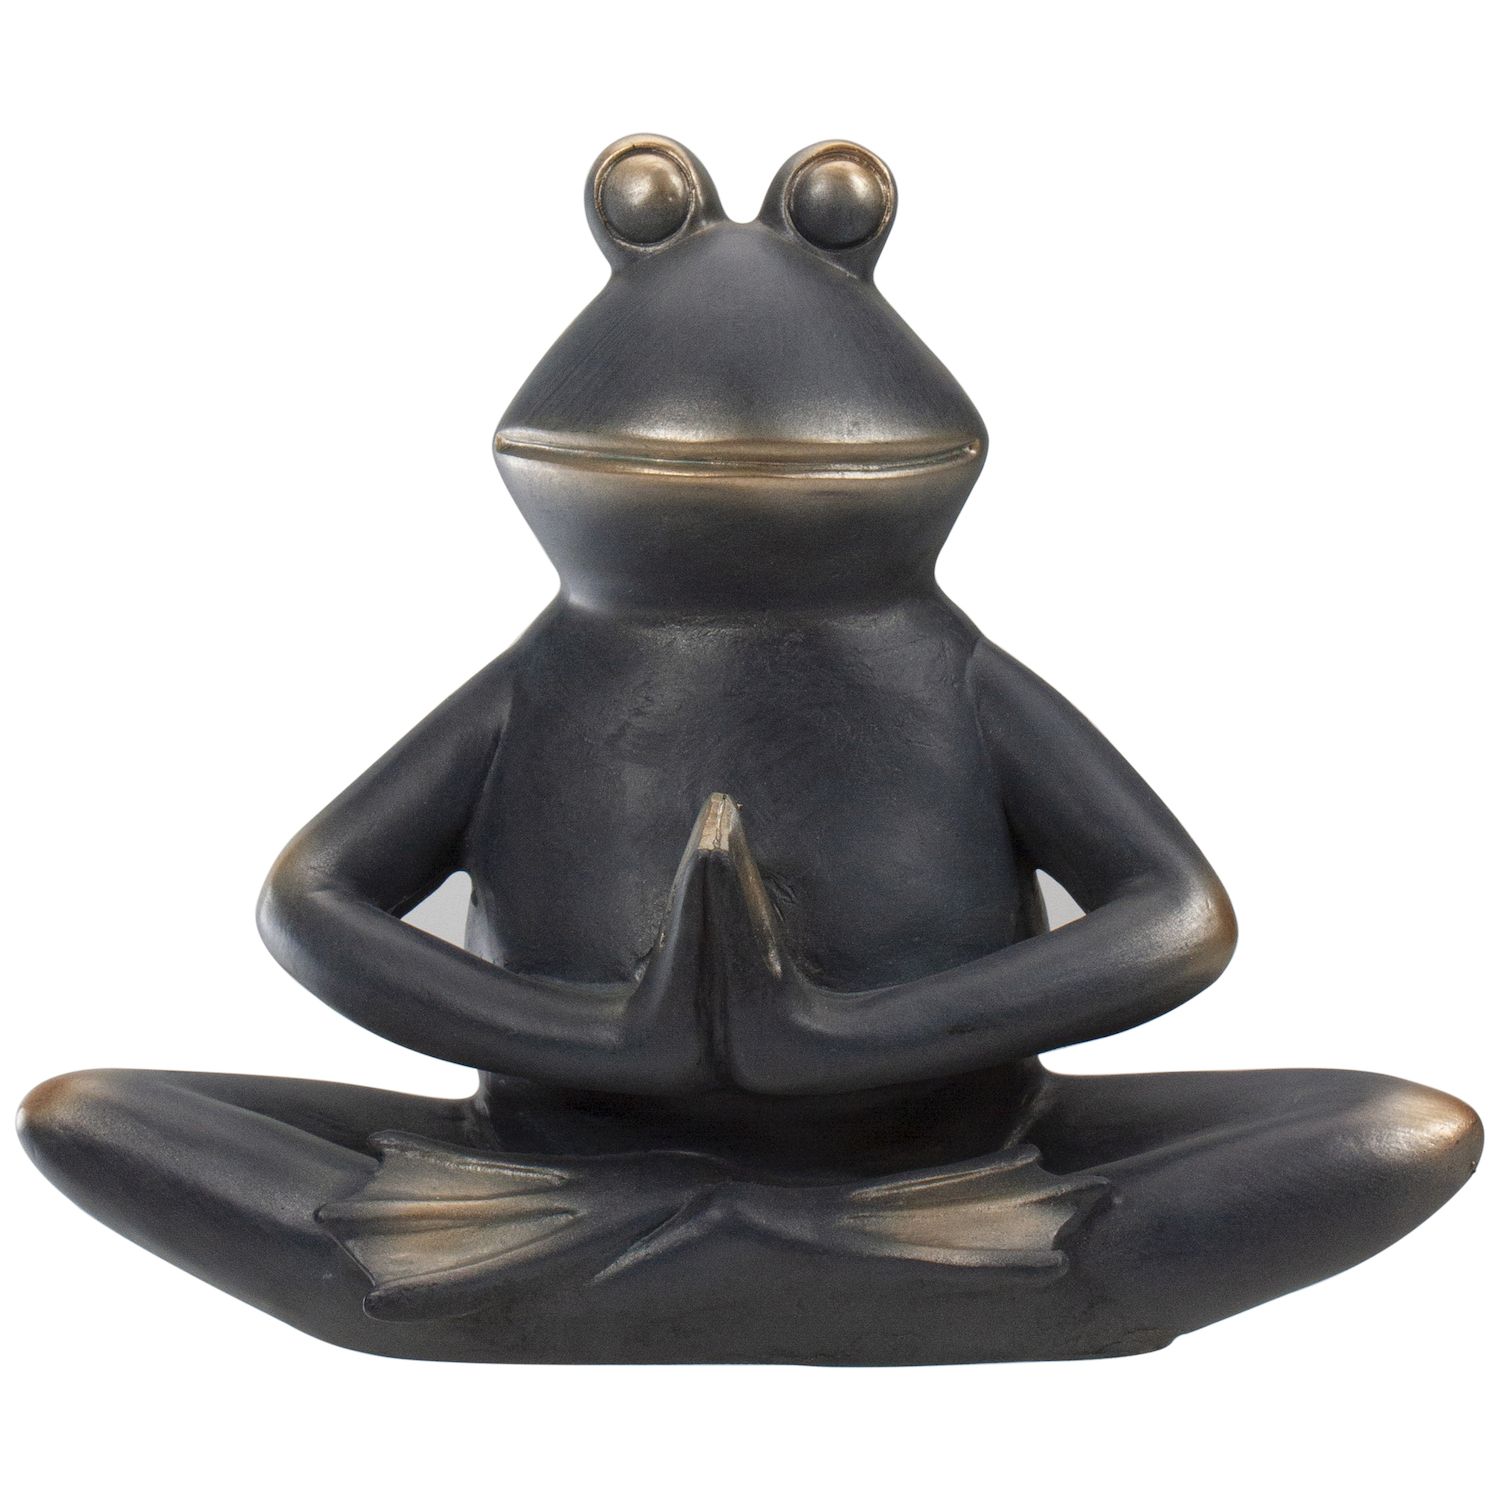 Pure Garden Frog Figurine